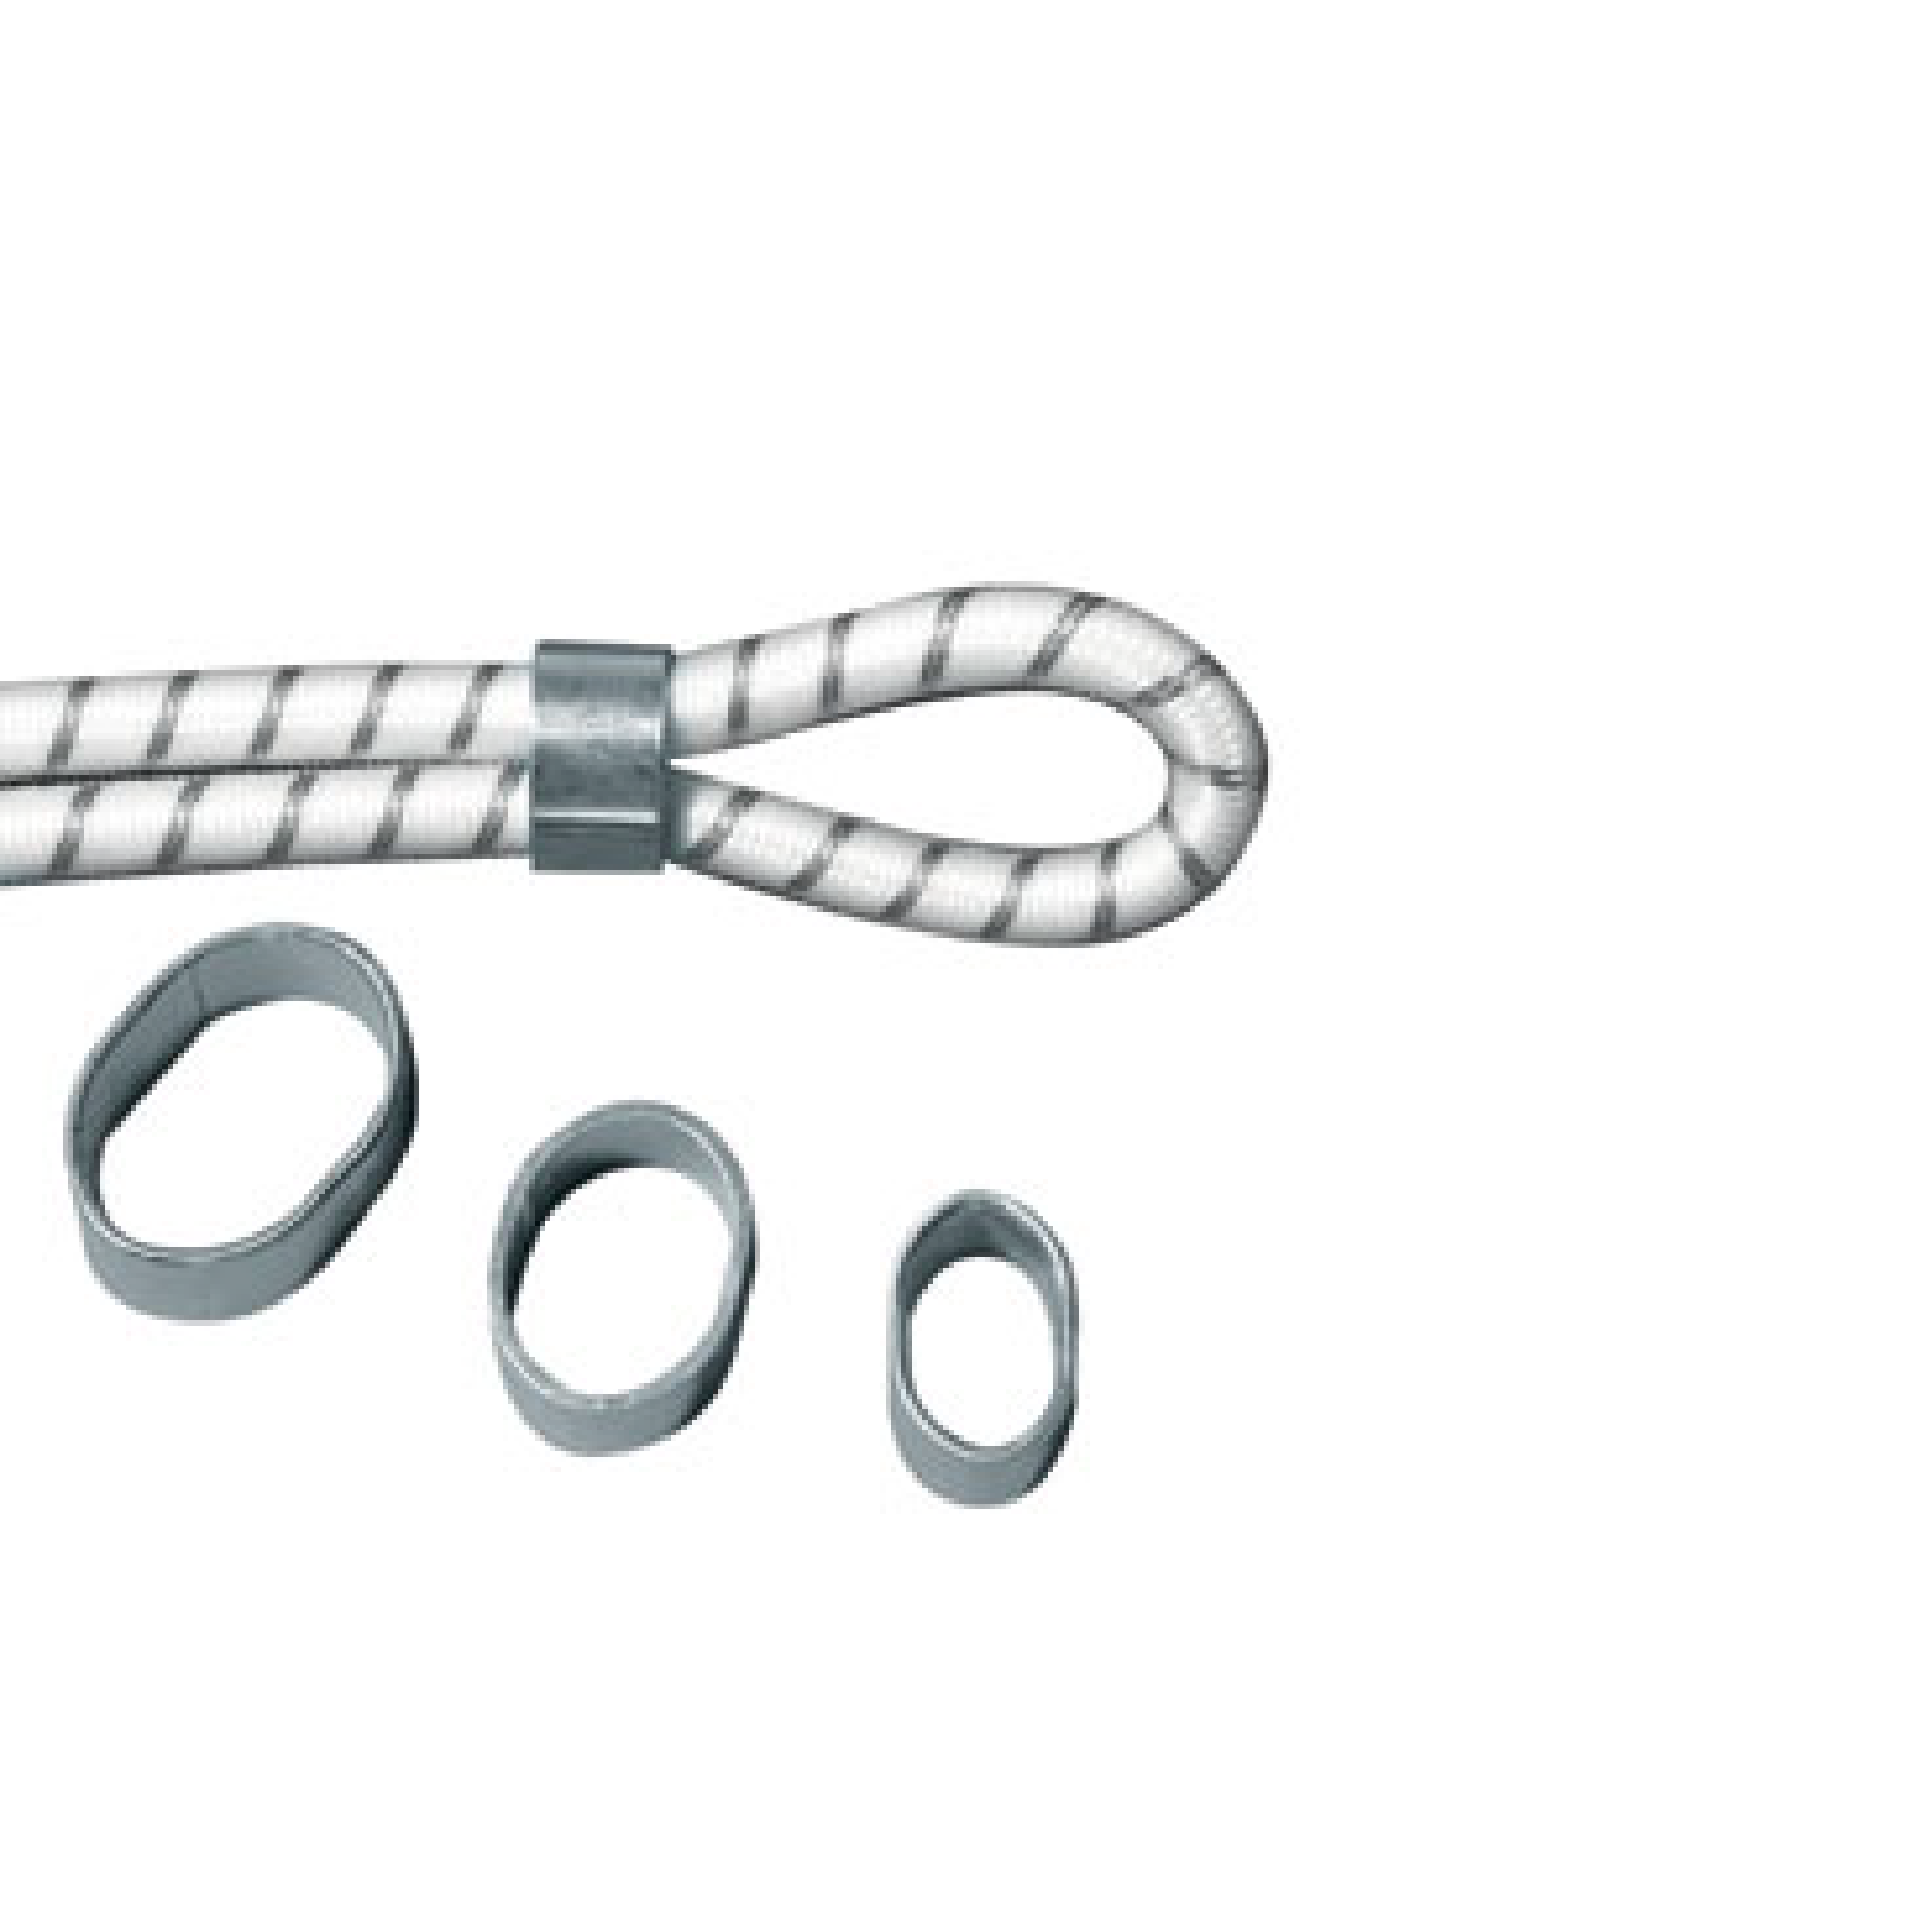 Accessori per teli - accessori per teloni - accessori per piscina - accessori tende da sole - pinza per fascette rivettatrice Tavola disegno 1 copia